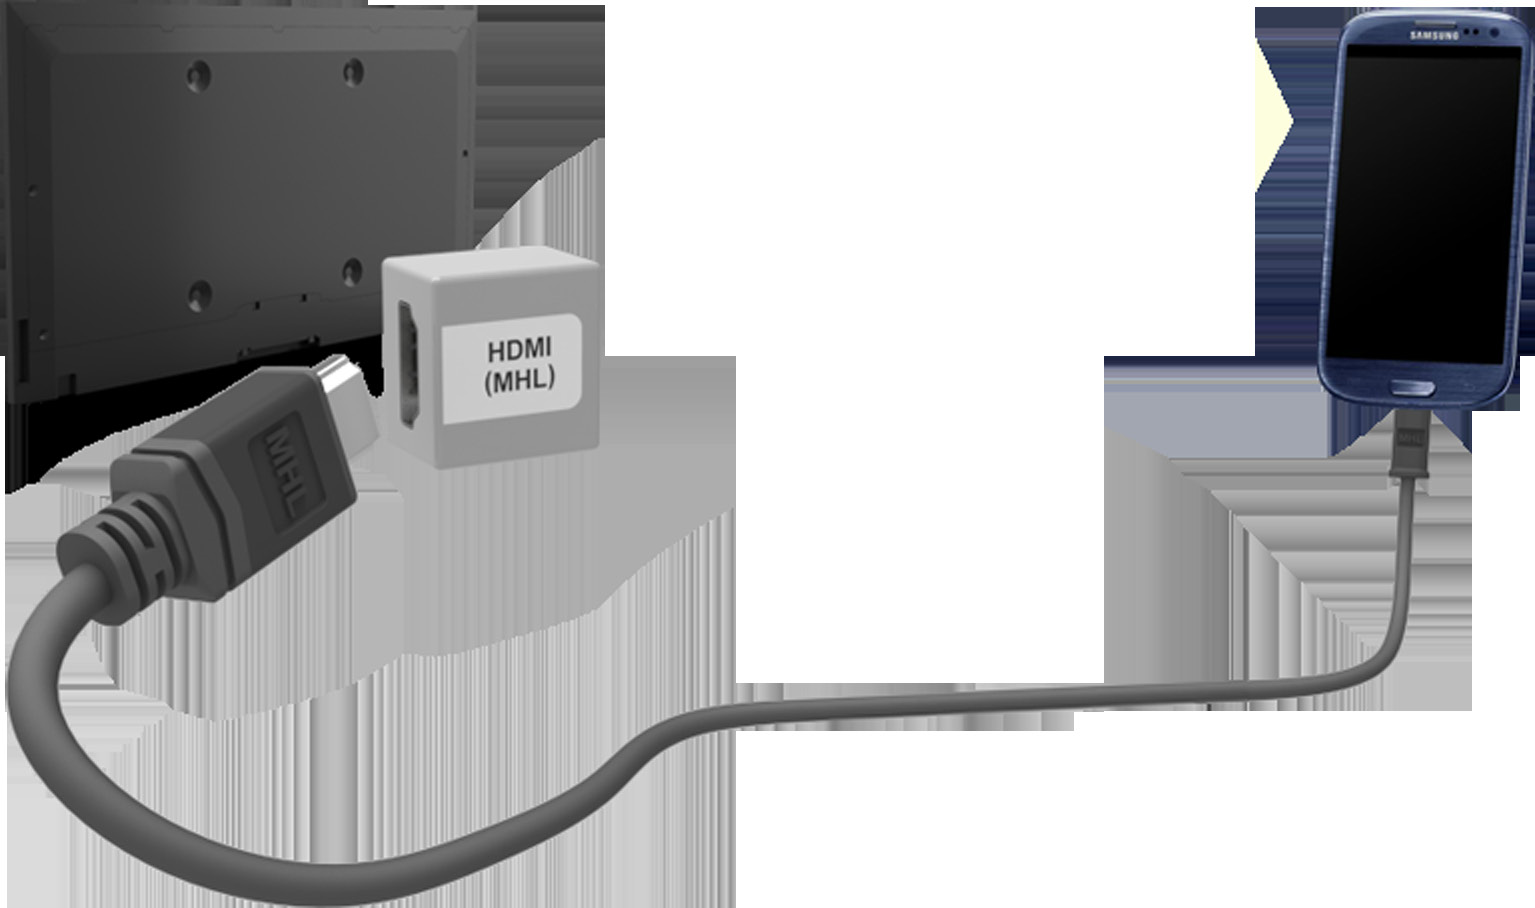 Podłączanie kabel MHL-HDMI Telewizor obsługuje funkcję MHL (Mobile High-Definition Link) za pośrednictwem kabla MHL.